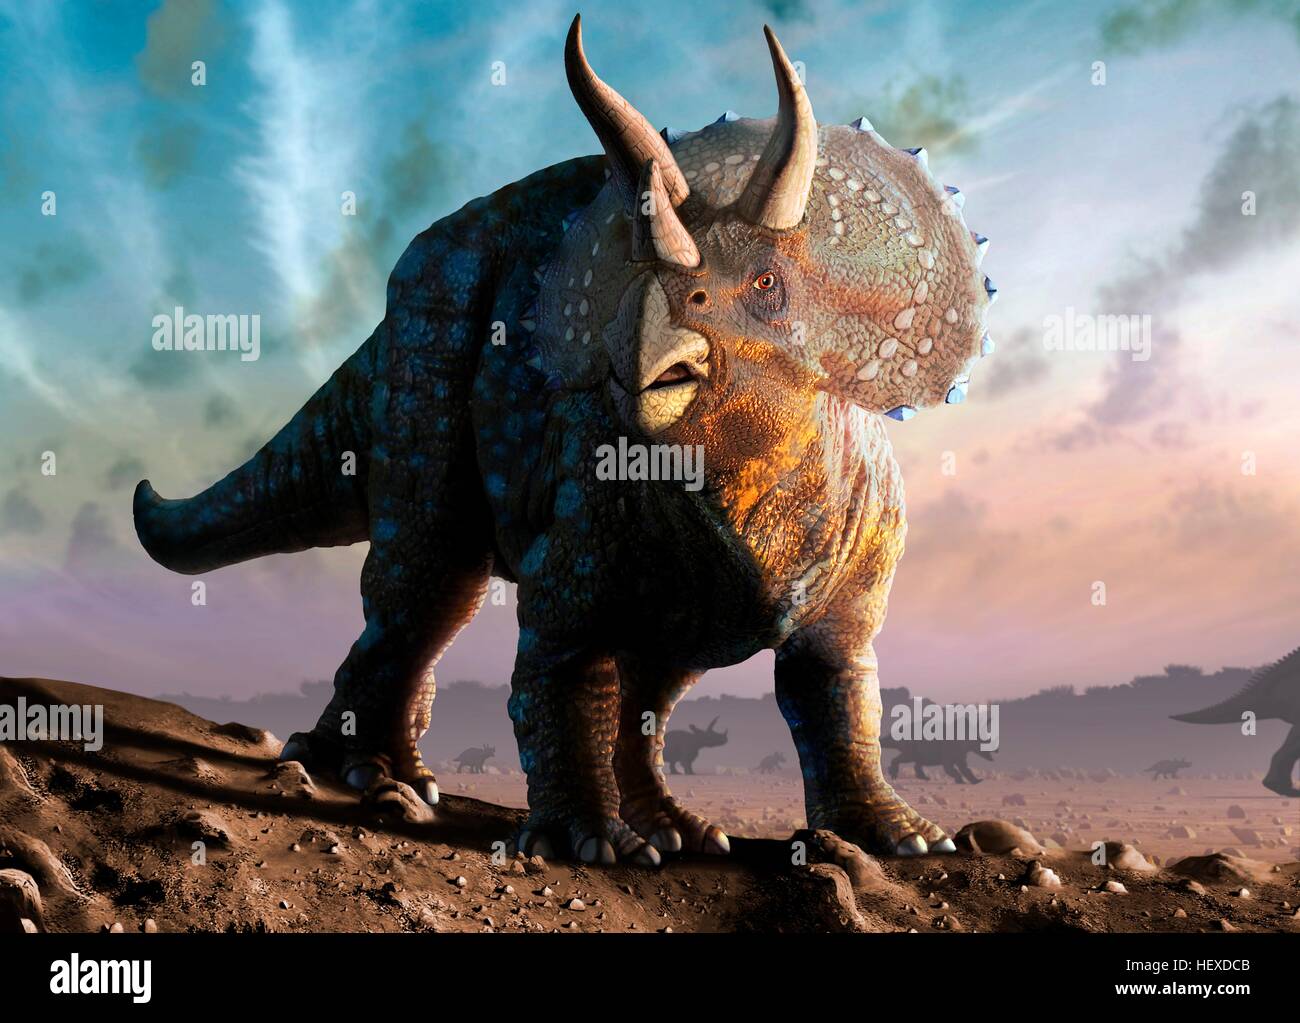 Artwork eines Triceratops Horridus Dinosauriers. Diese Tiere wurden häufig in der späten Kreidezeit vor etwa 70 Millionen Jahren bis zum Aussterben der Dinosaurier vor 65 Millionen Jahren. Triceratops war ein pflanzenfressender Dinosaurier, der eine Länge von bis zu neun Metern erreichen konnte. Seine Hörner und seinen Hals Schild verwendet, um sich gegen Angriffe zu verteidigen. Wie moderne Ebenen Tiere können sie gelebt haben in Herden, im heutigen Nordamerika. Stockfoto